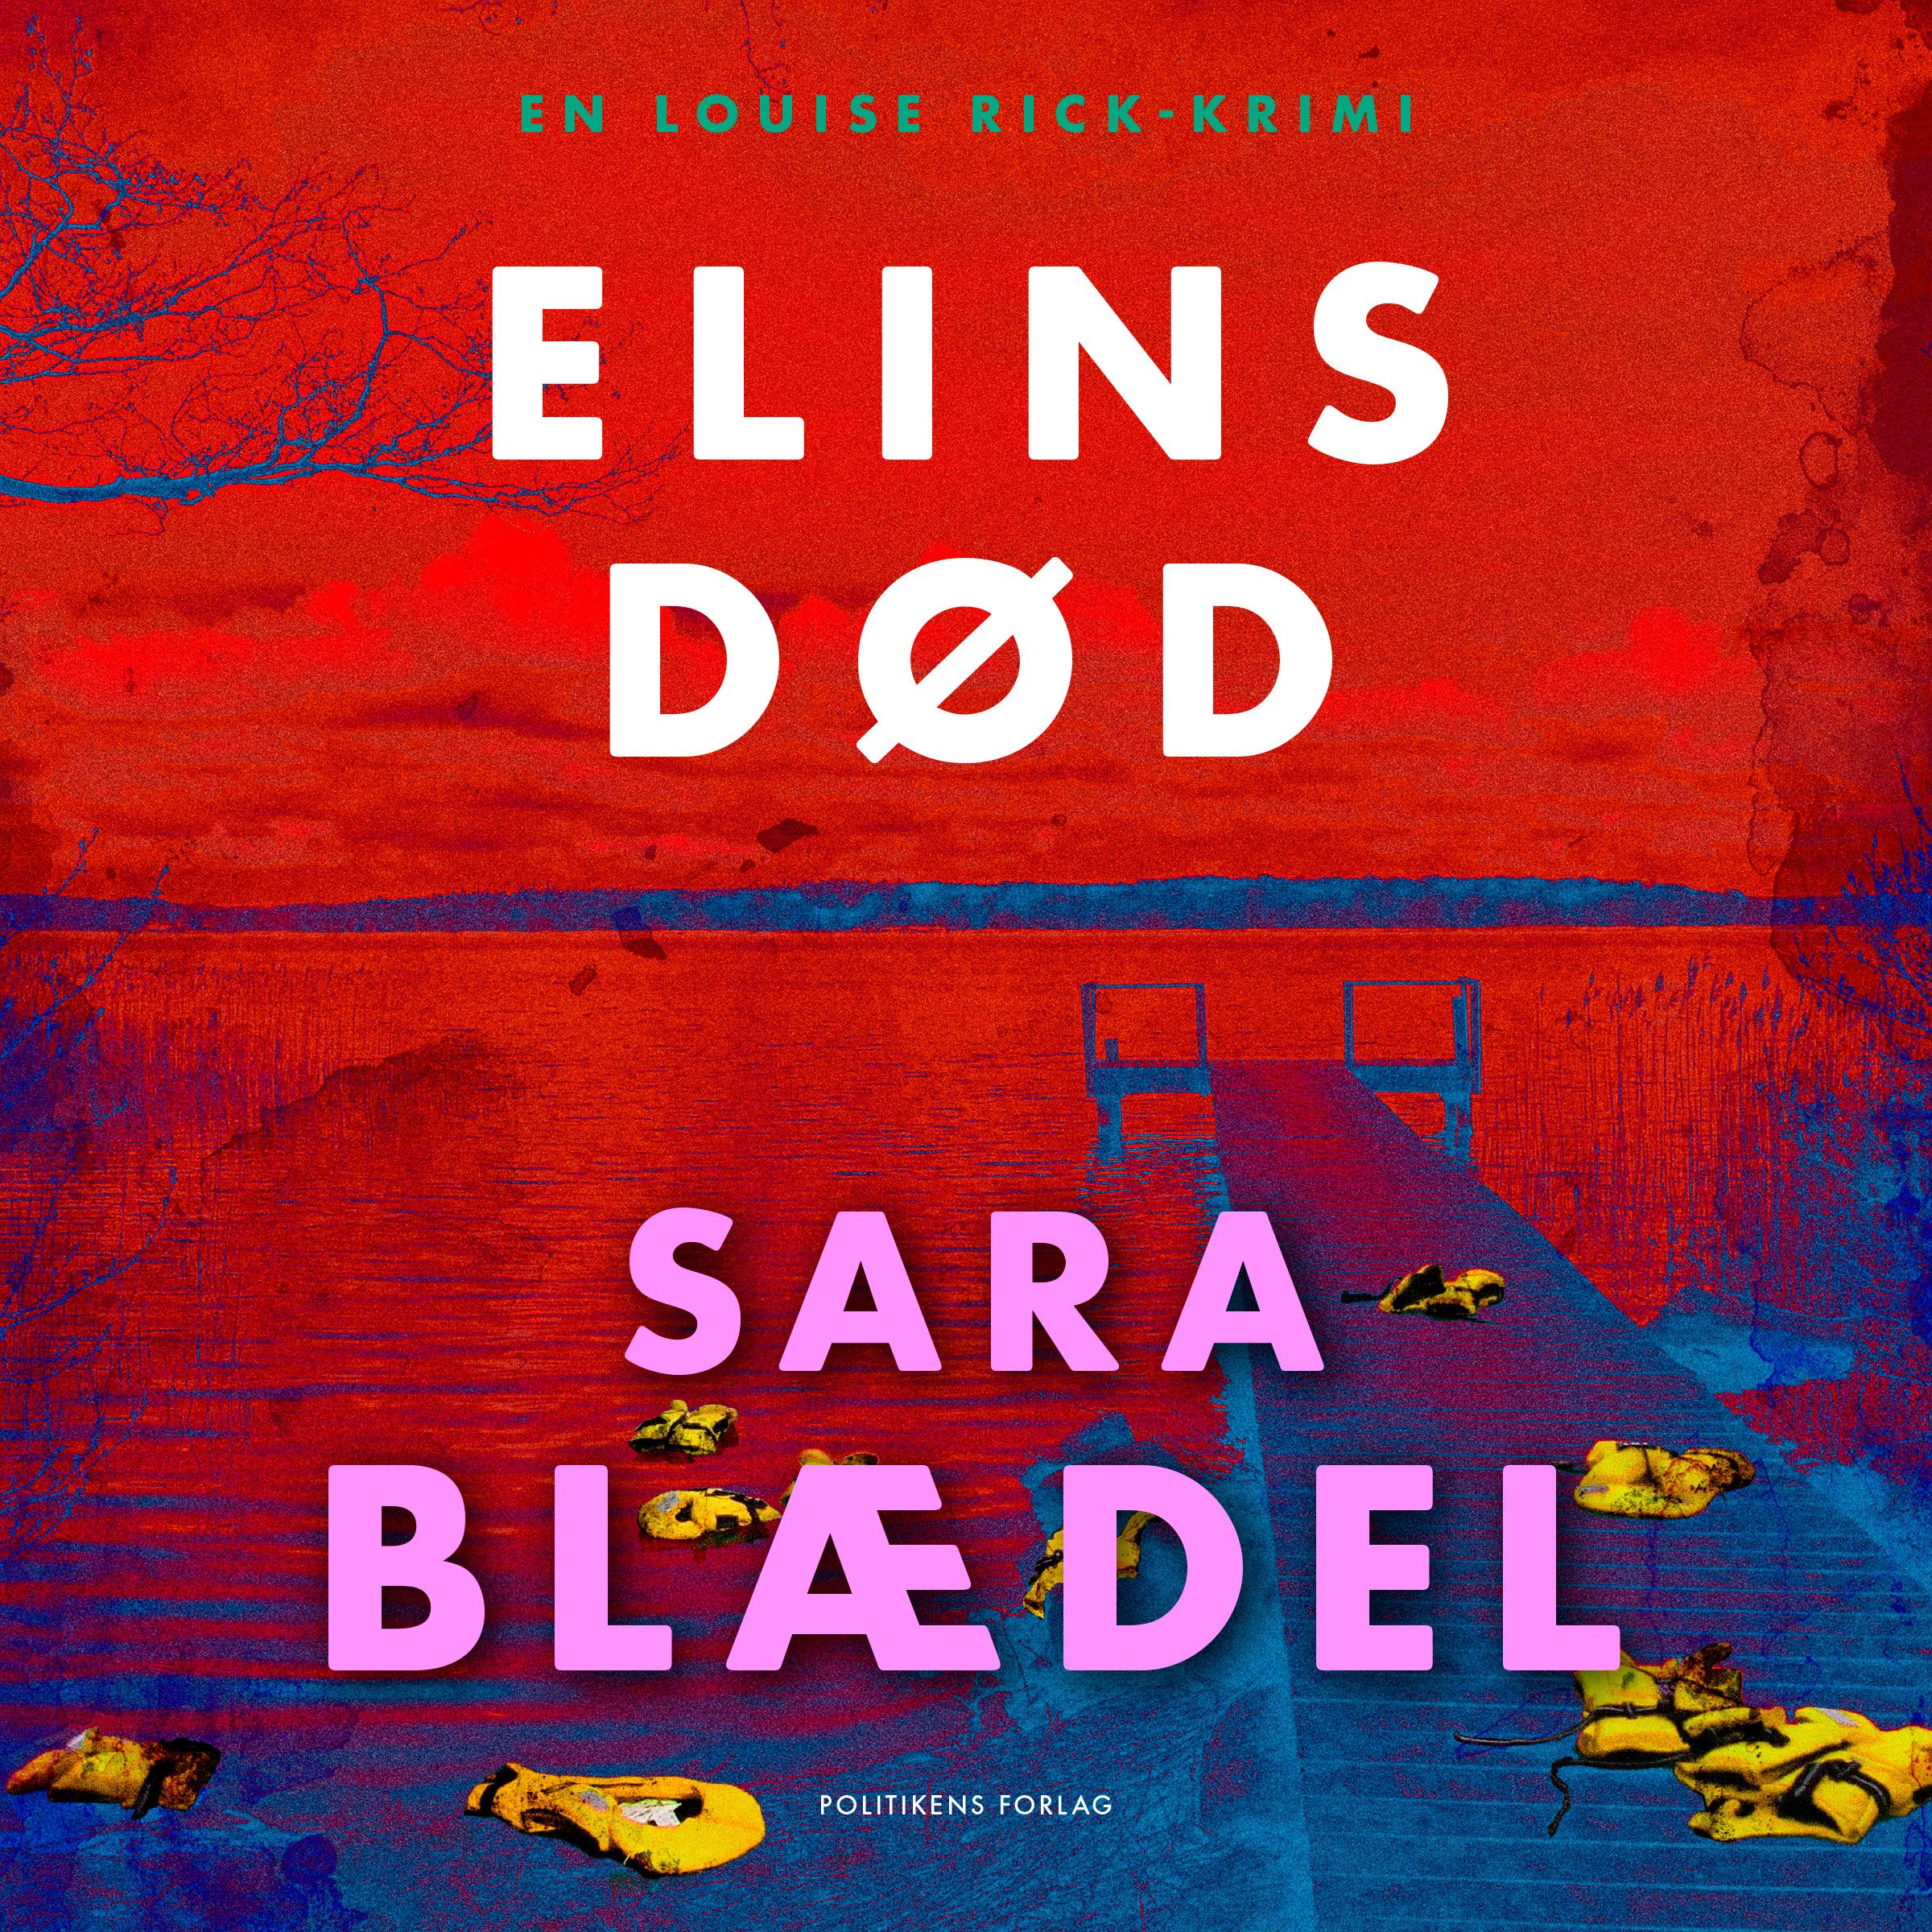 Elins død, lydbog af Sara Blædel